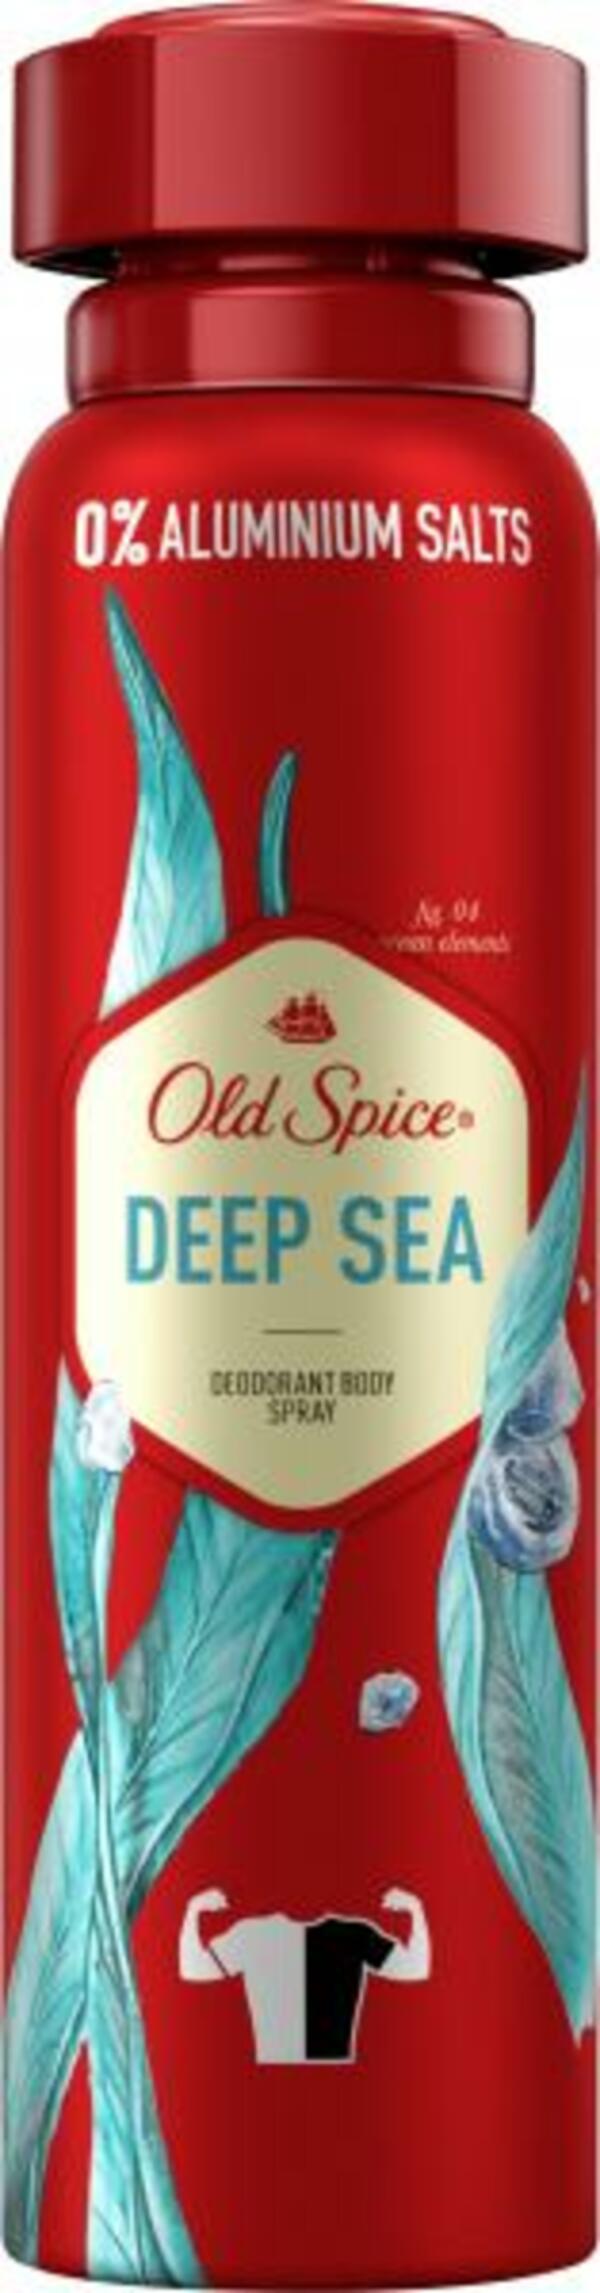 Bild 1 von Old Spice Deep Sea Deo Bodyspray